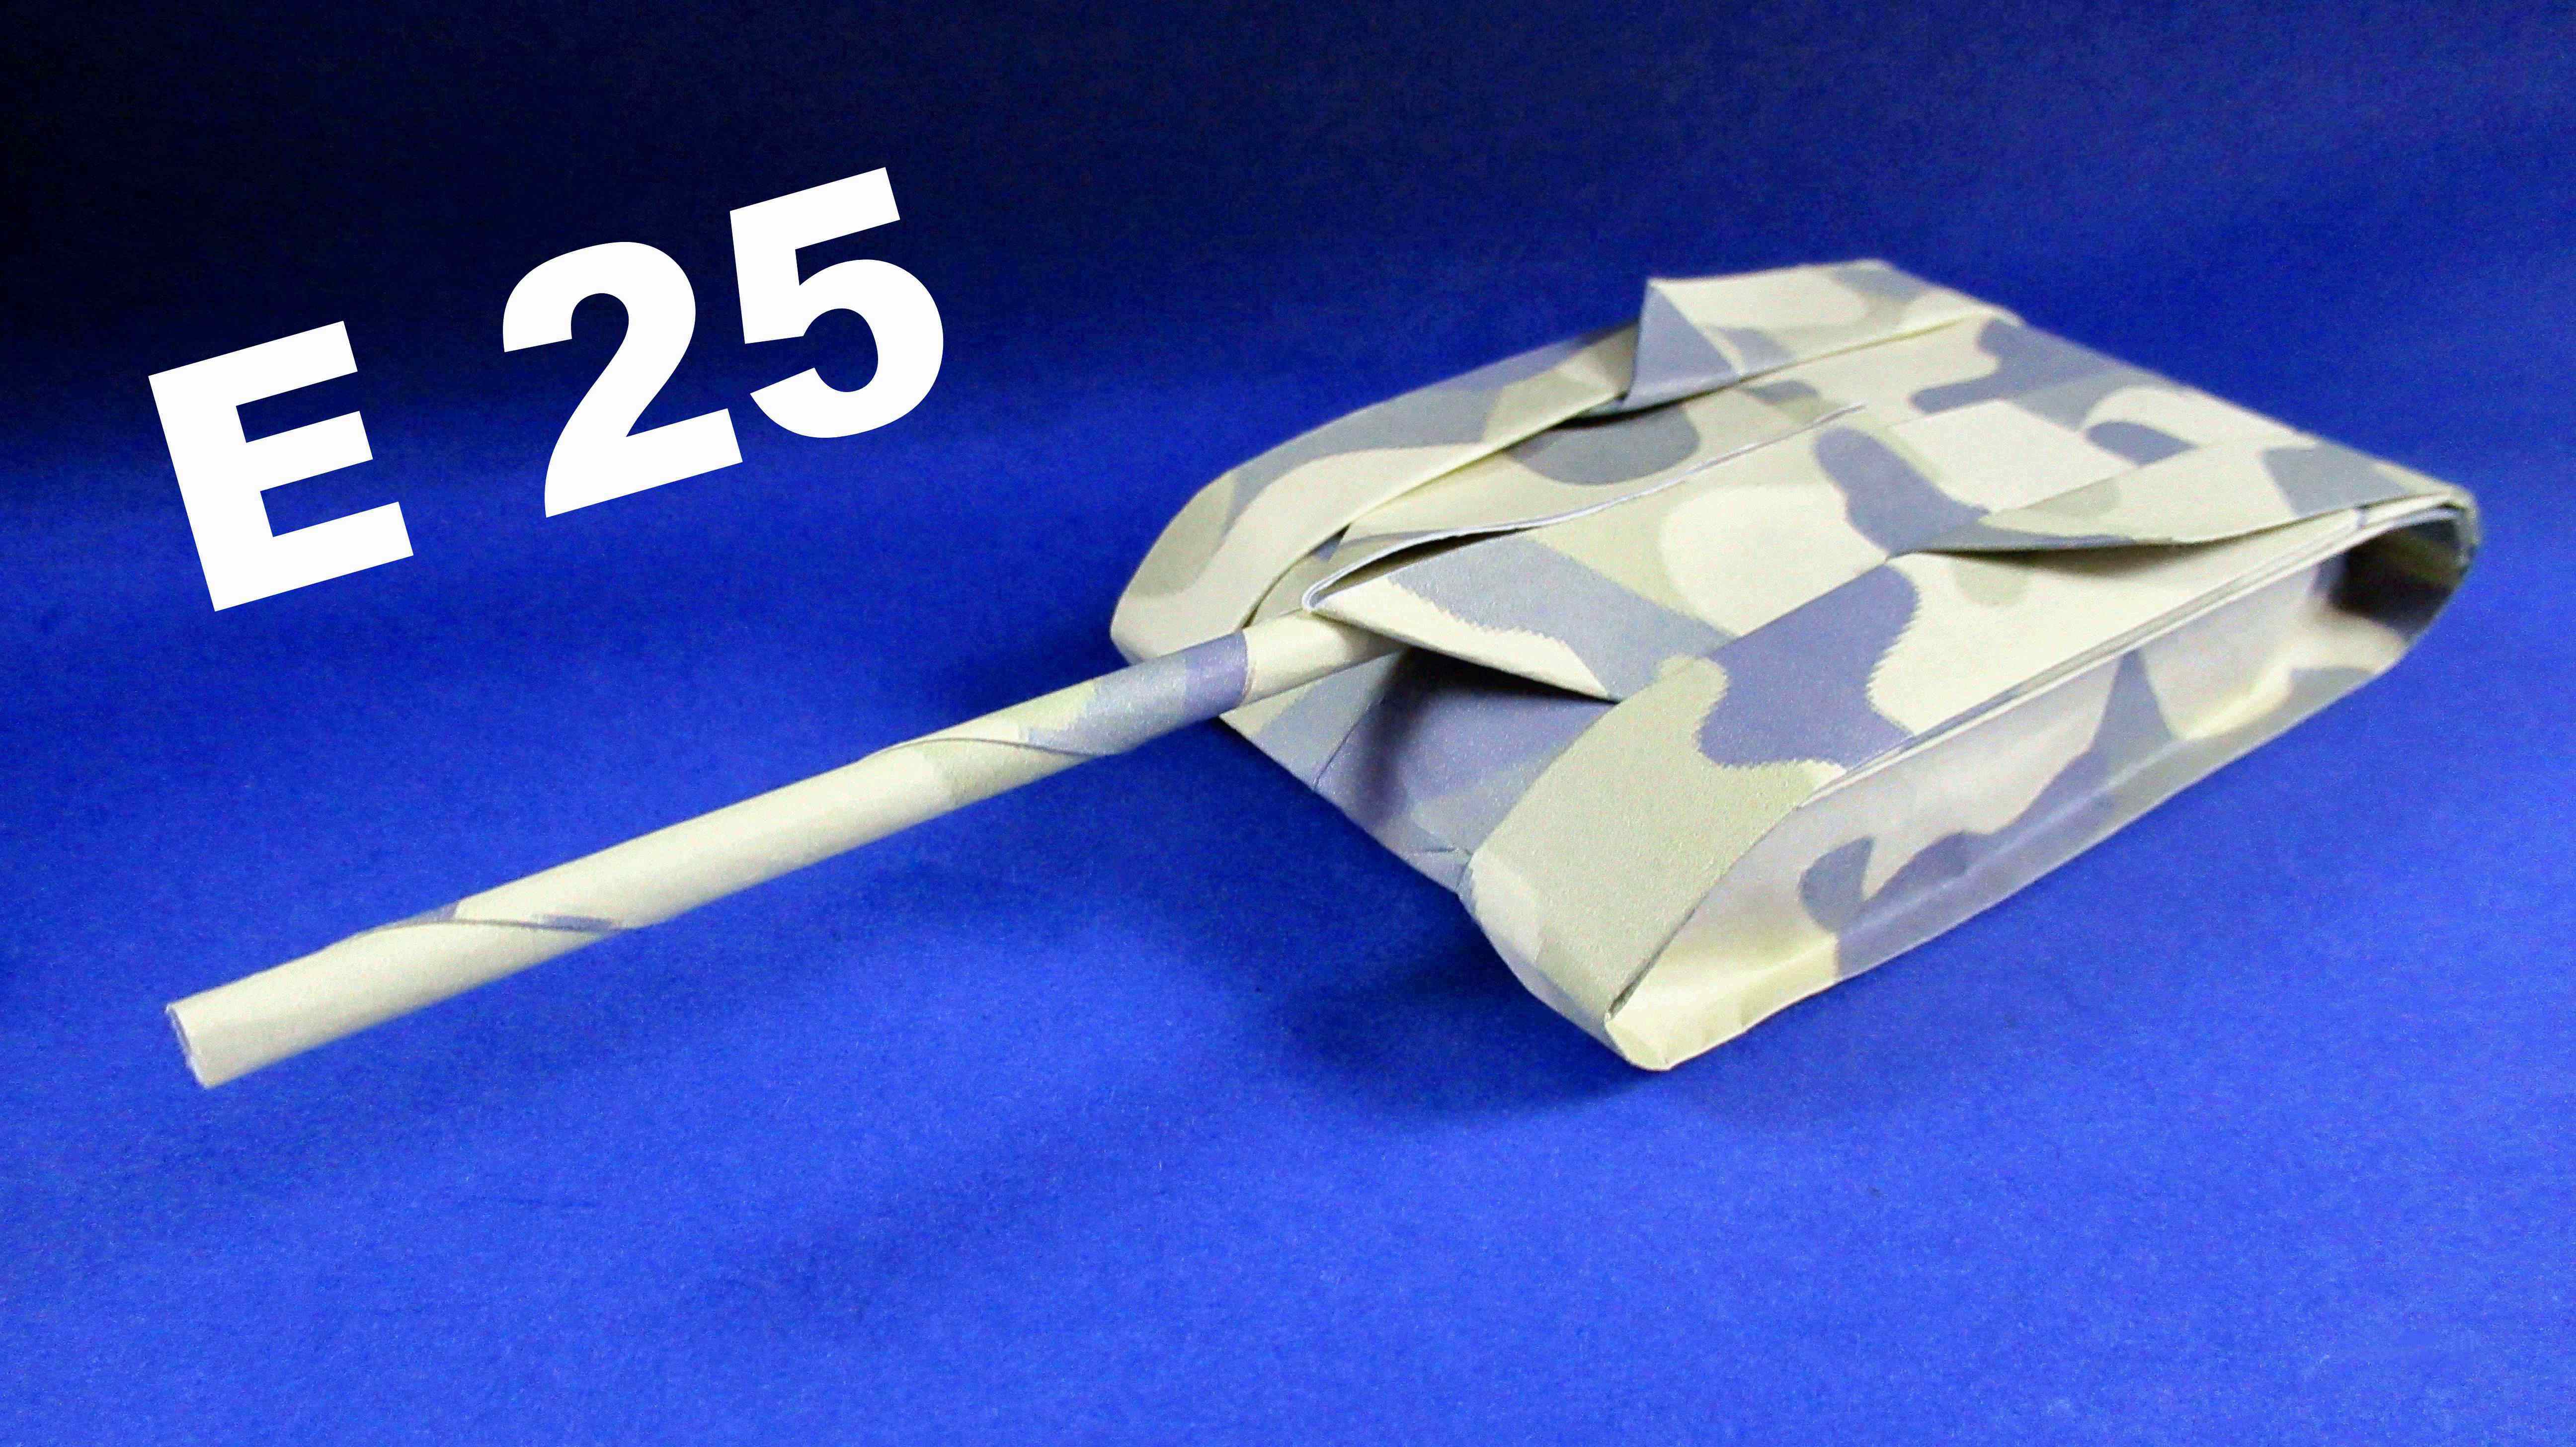 Танк из бумаги а4. Танк е 25 из бумаги. Модель танка из картона. Макет танка из бумаги. Объемный танк из бумаги.